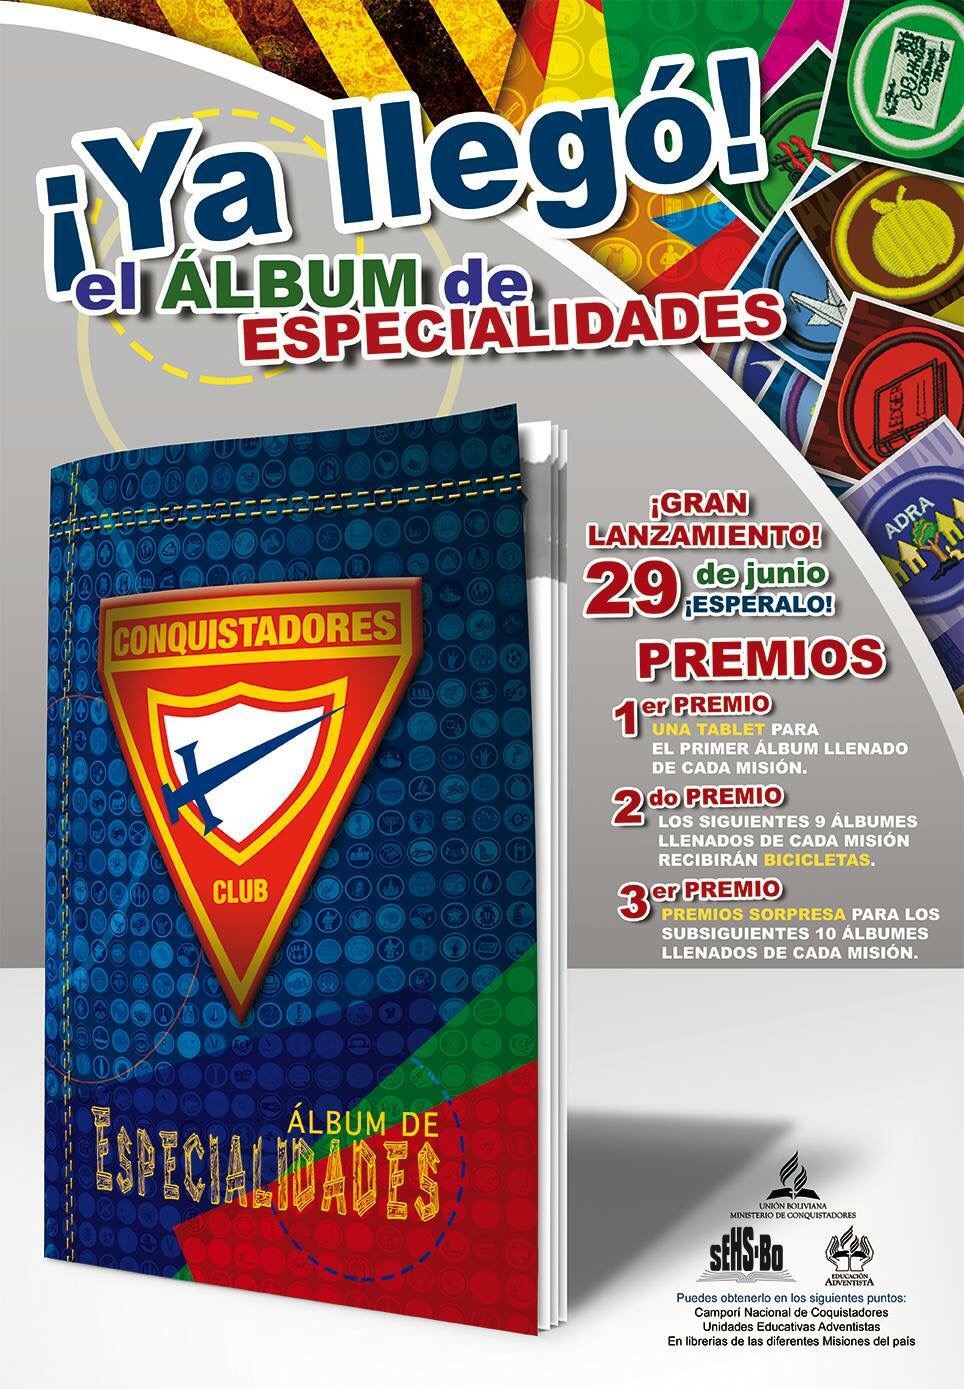 ALBUM DE ESPECIALIDADES! | Club de Conquistadores 